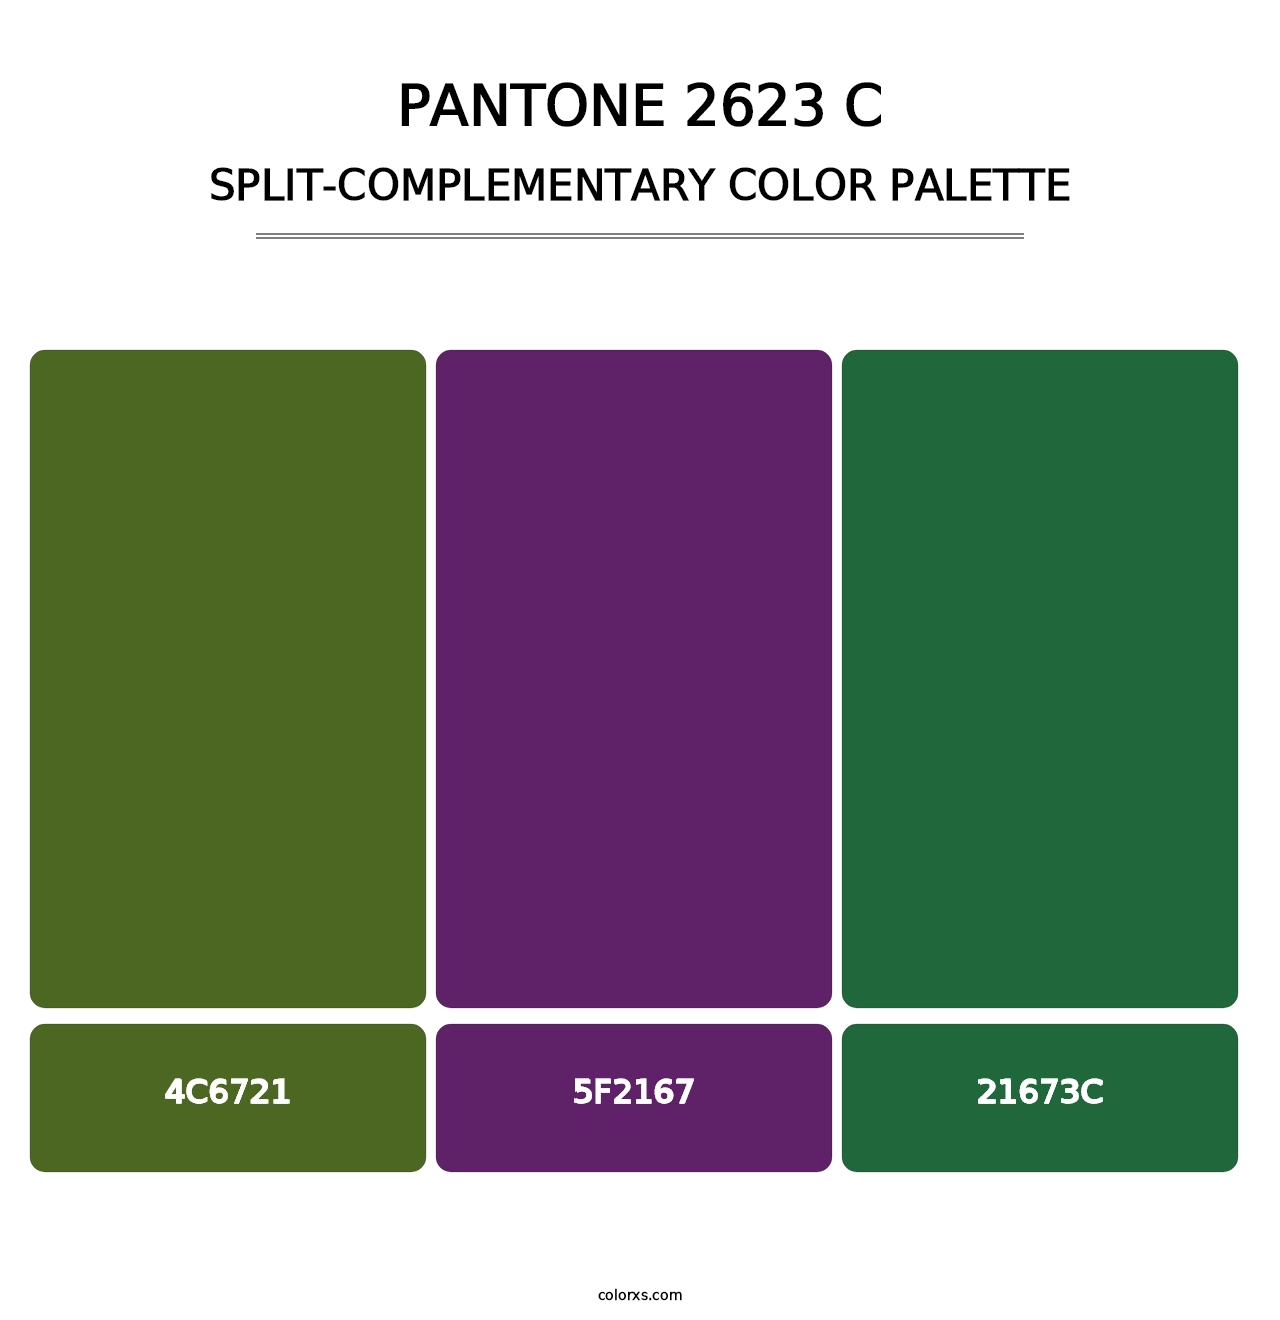 PANTONE 2623 C - Split-Complementary Color Palette